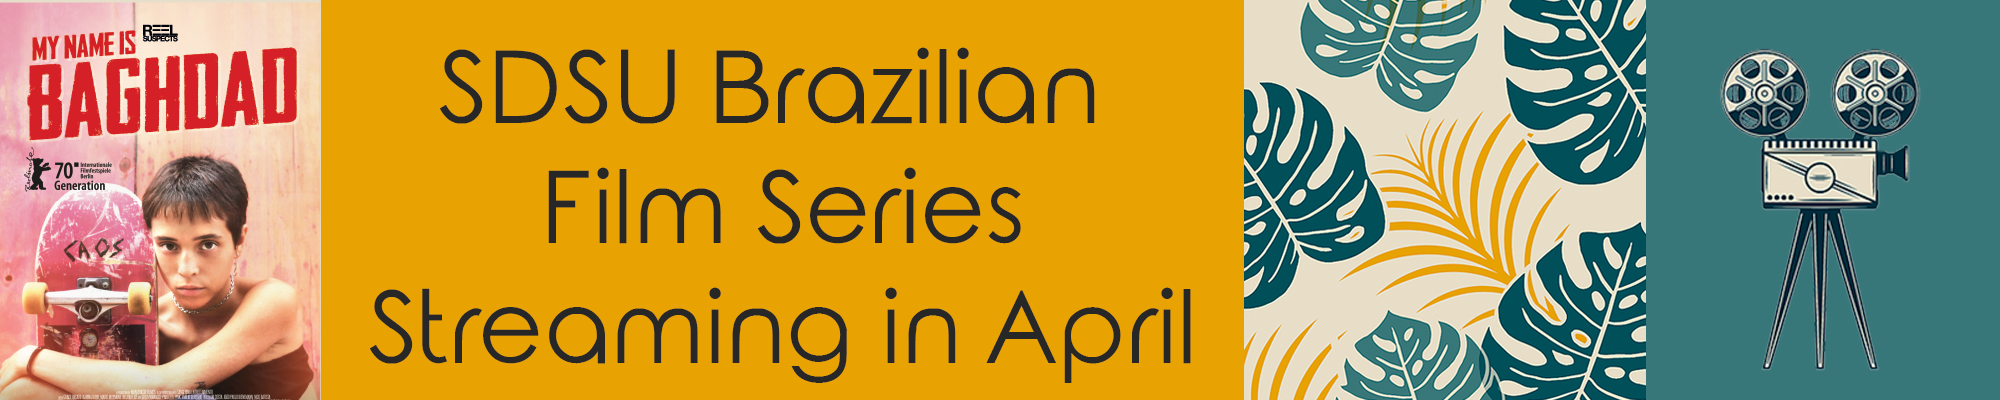 SDSU Brazilian Film Series Streaming in April